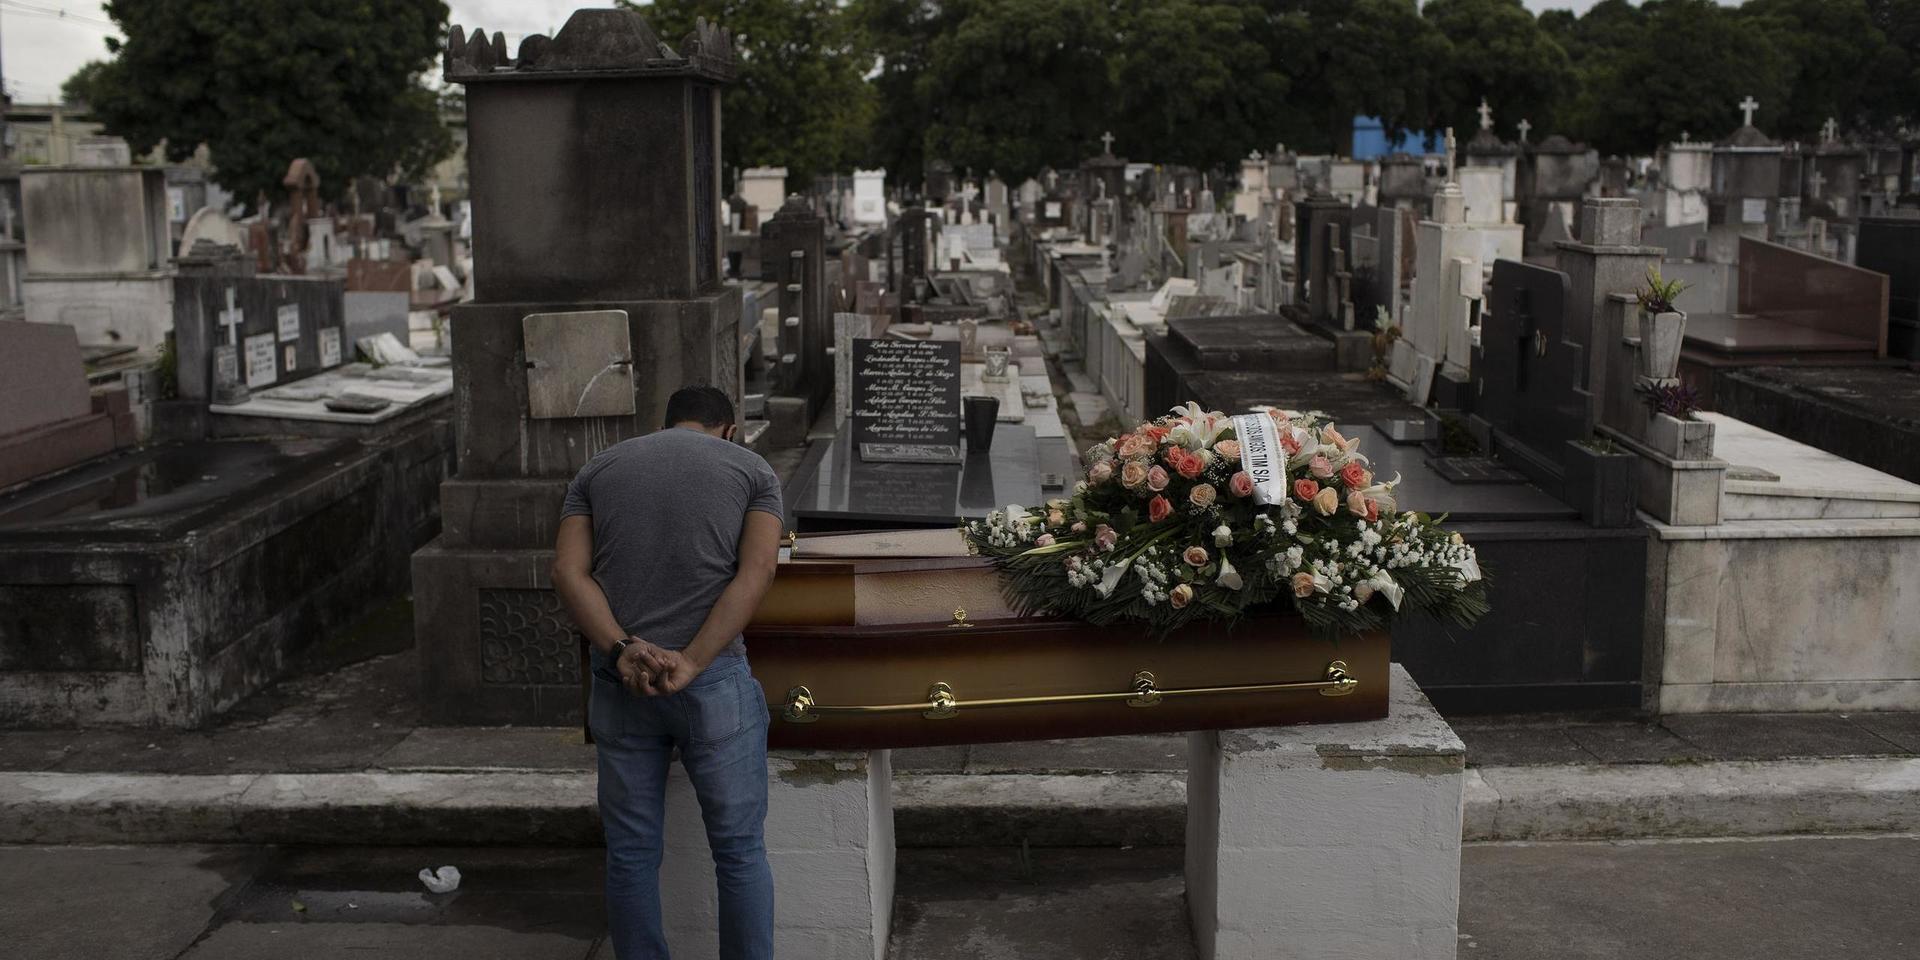 En man sörjer en släkting som gått bort efter att ha insjuknat i covid-19 i Rio de Janeiro i Brasilien. Bild från 13 april.